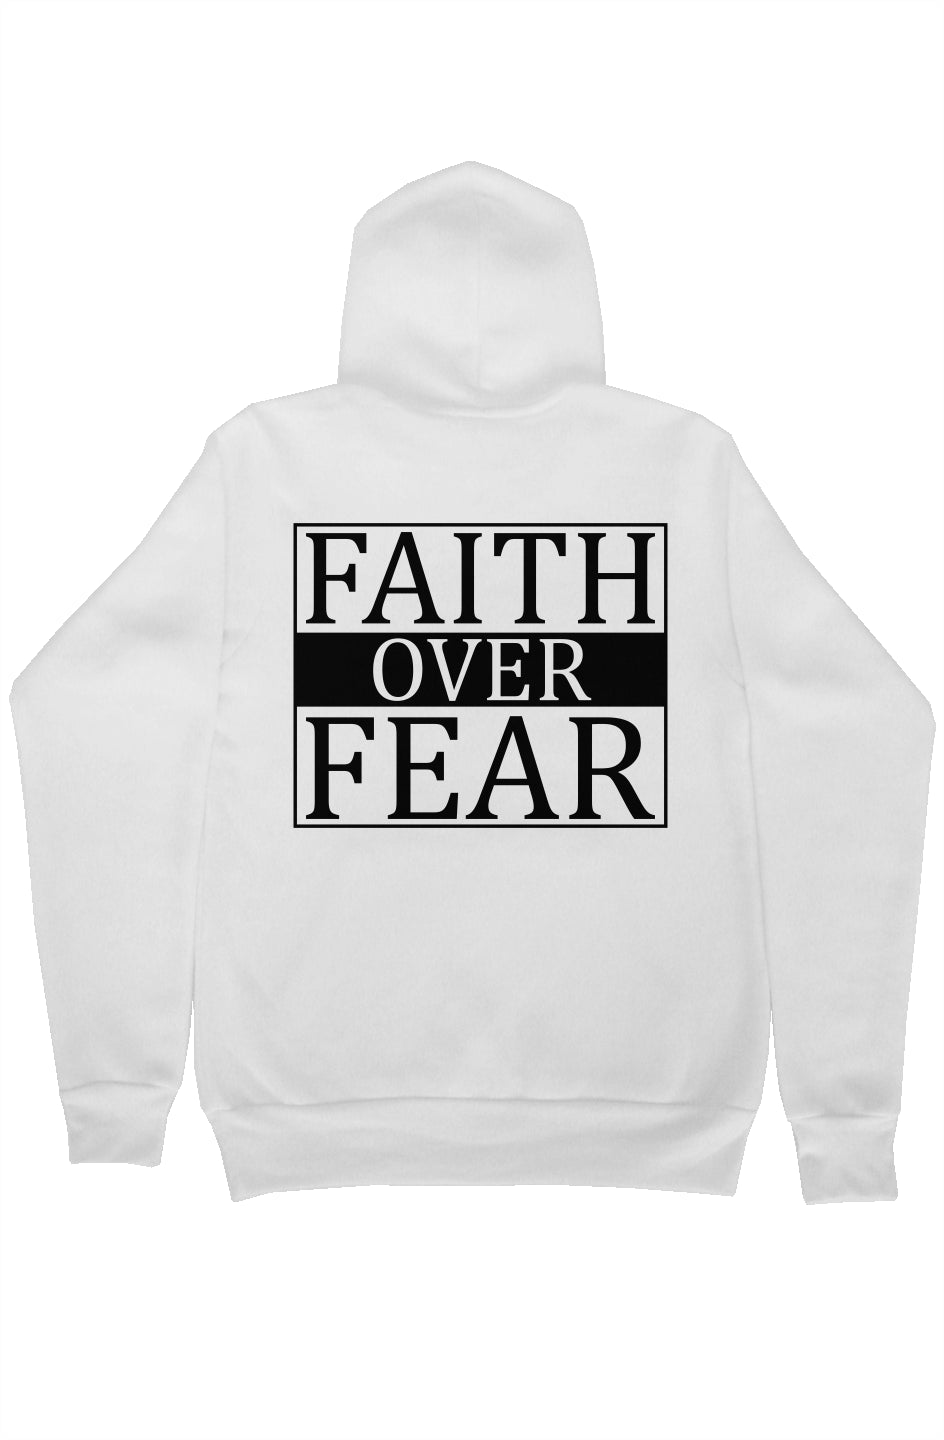 Courageous Heart - Faith over Fear - Pullover Hoody